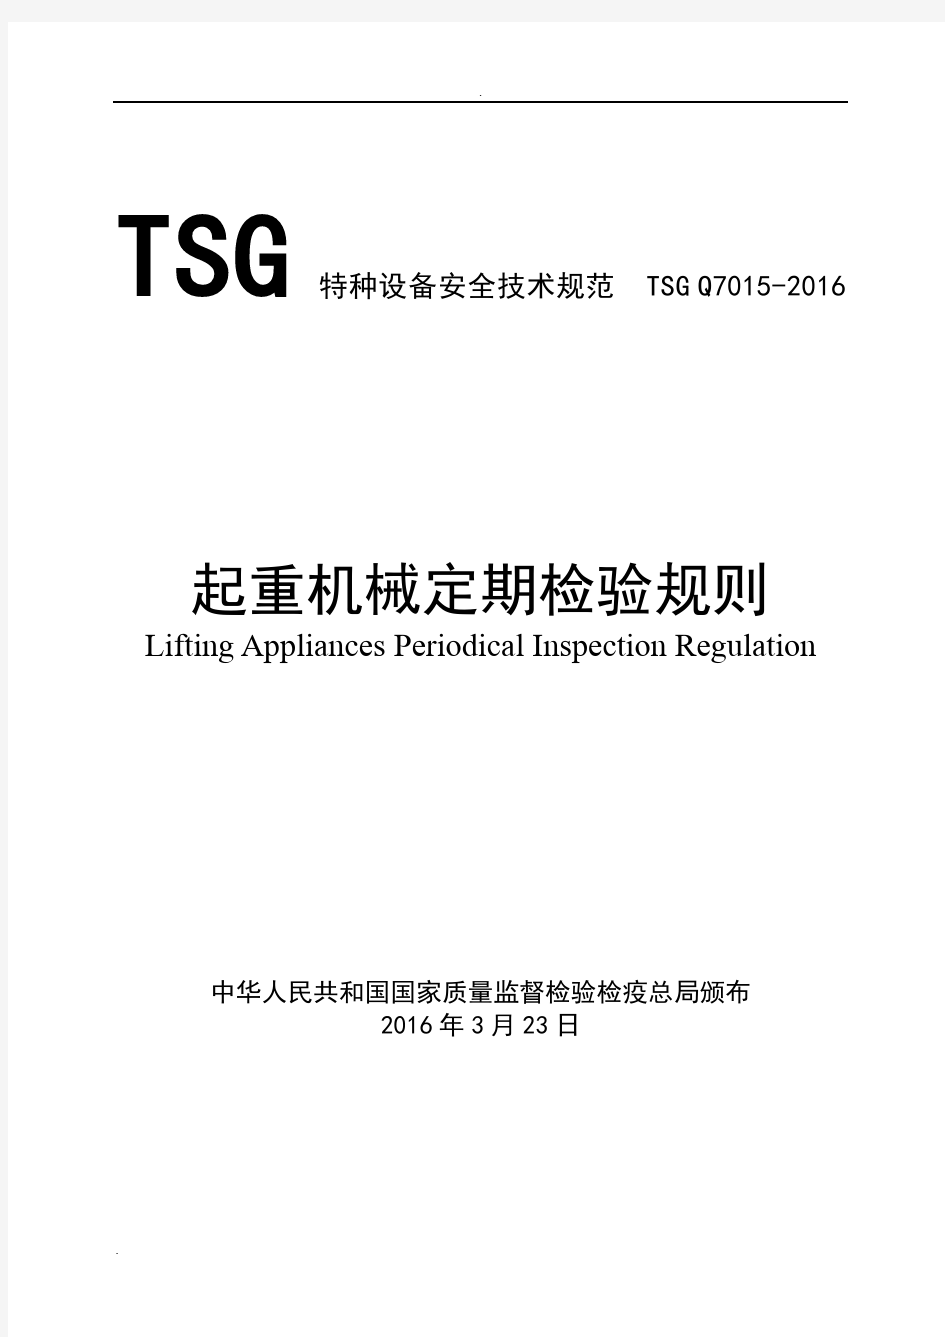 起重机械定期检验规则(TSG Q7015-2016)